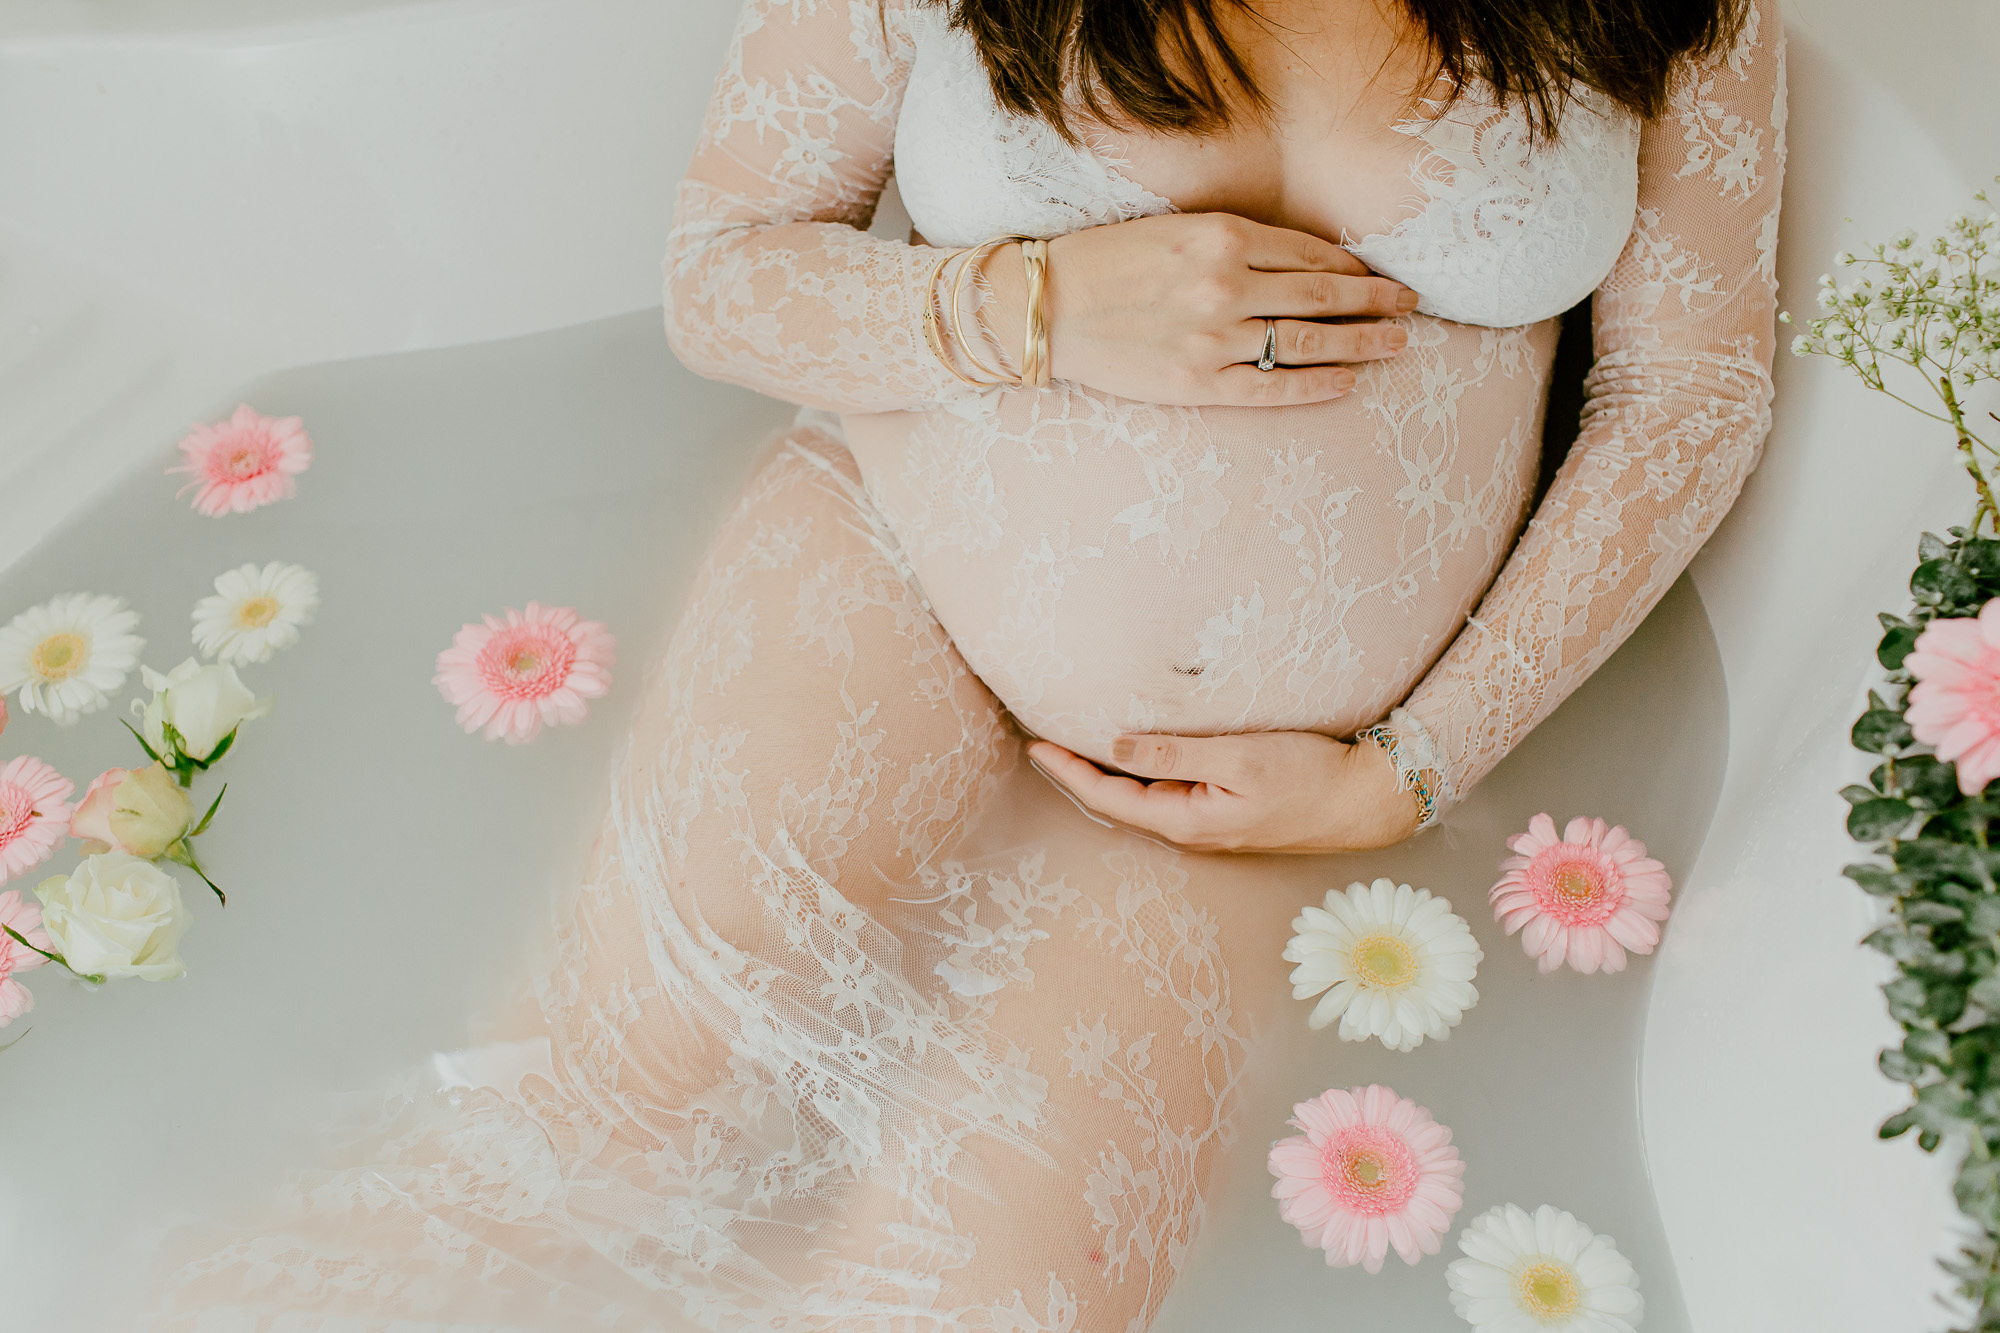 Séance grossesse dans un bain de lait à Nîmes dans le Gard